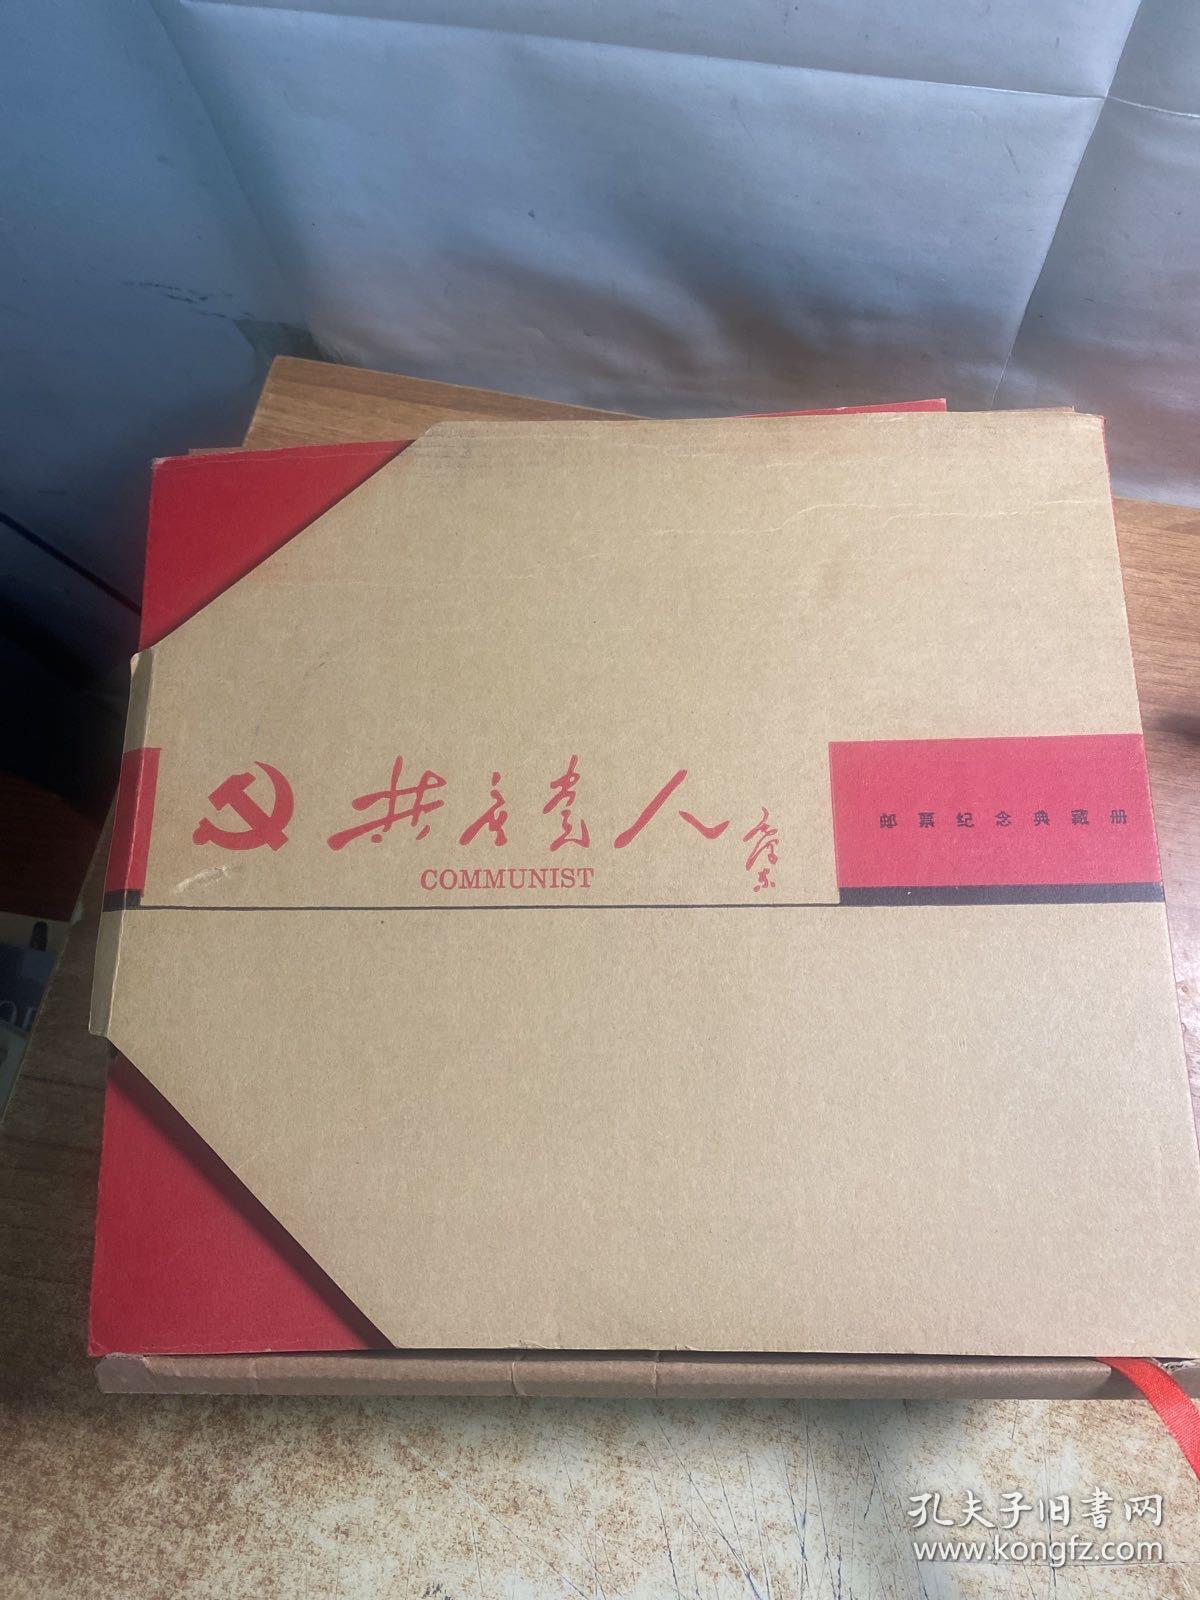 共产党人邮票纪念典藏册。